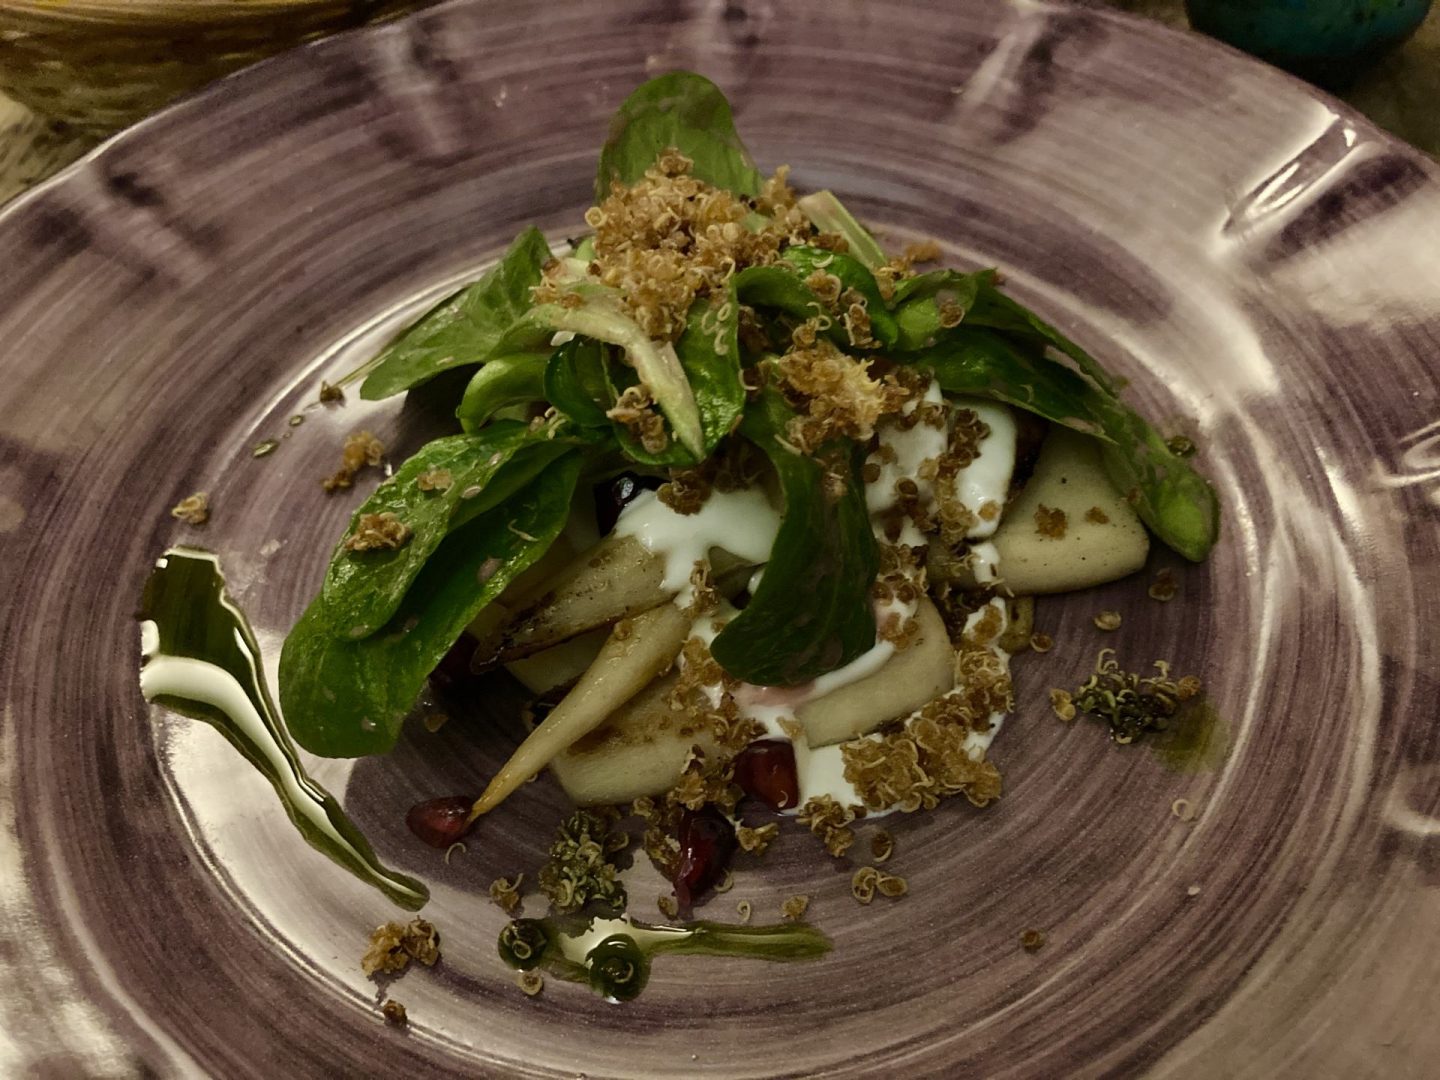 Erfahrung Bewertung Kritik Pastabar Caruso Köln Wurzelpetersilie Granatapfel Quinoa Foodblog Sternestulle